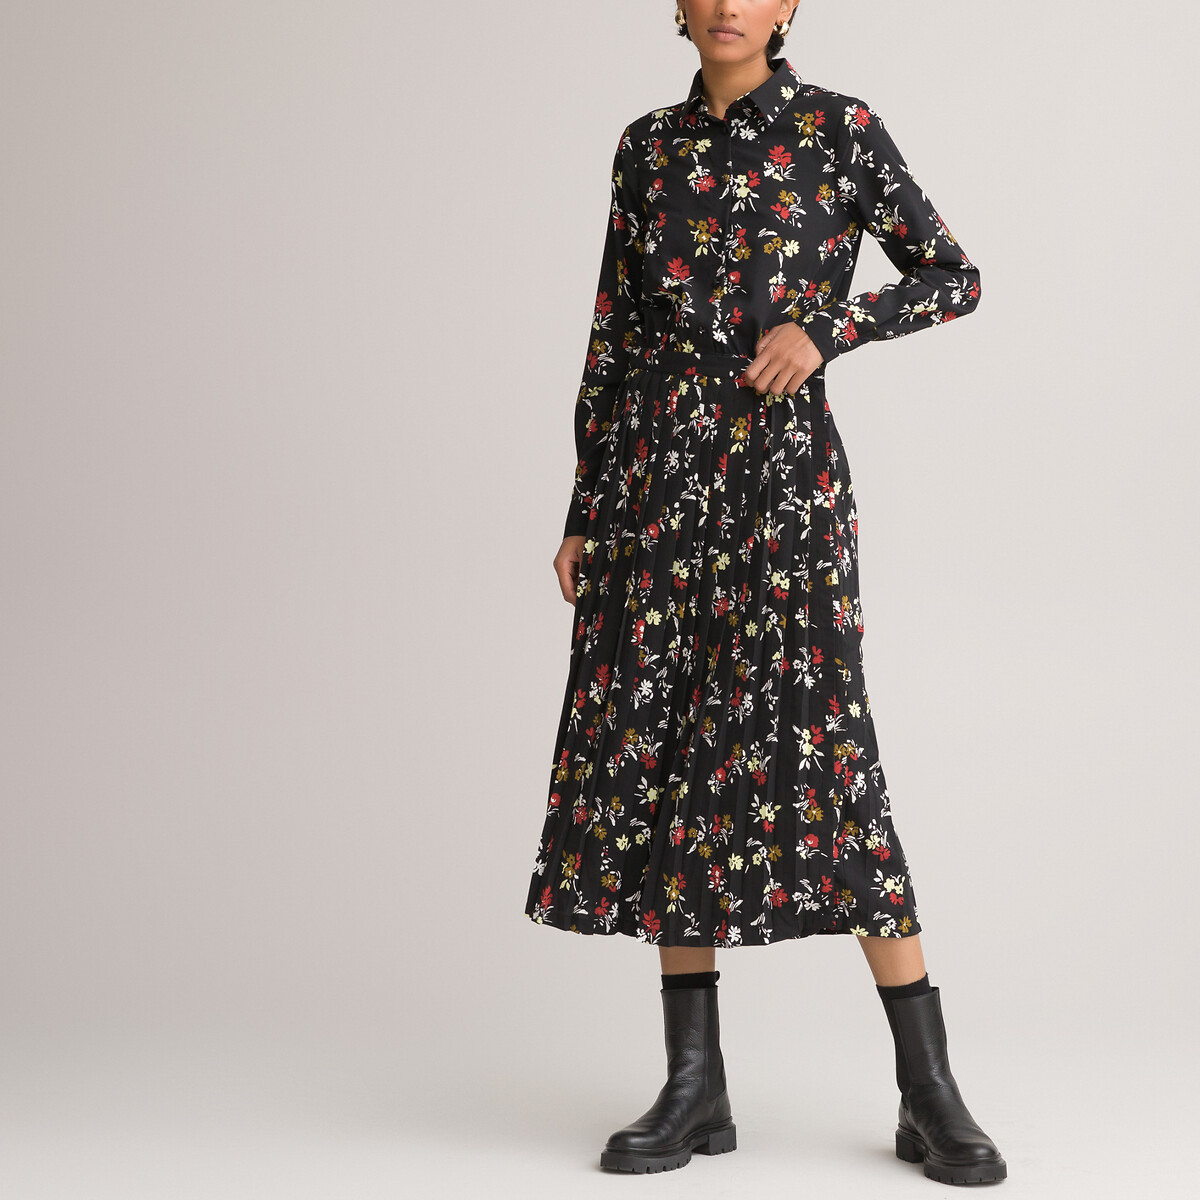 Платье-рубашка LaRedoute С низом с плиссировкой и цветочным принтом 52 черный, размер 52 - фото 1